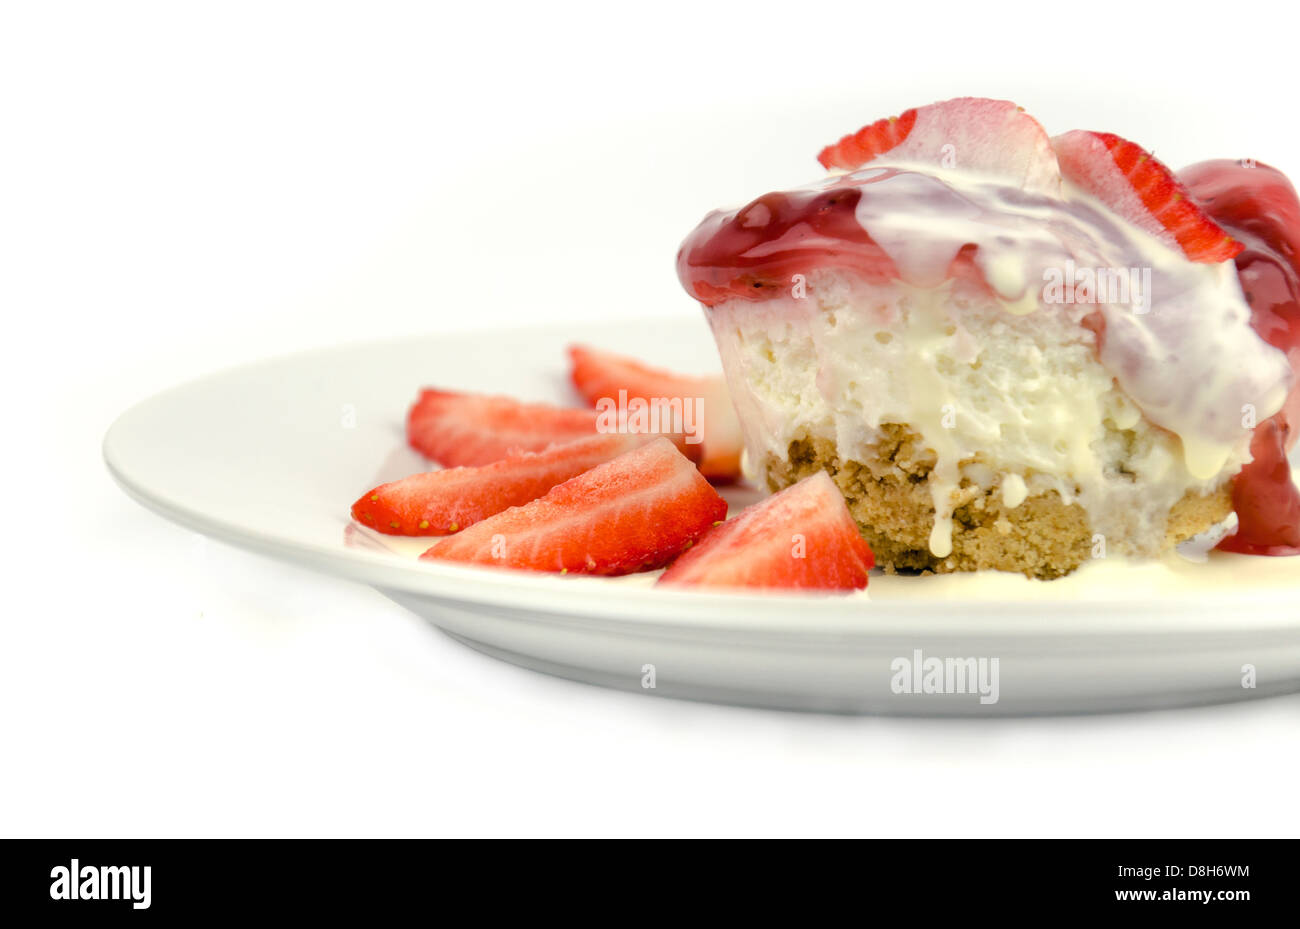 Strawberry cheesecake with fresh strawberries and fresh cream Stock Photo